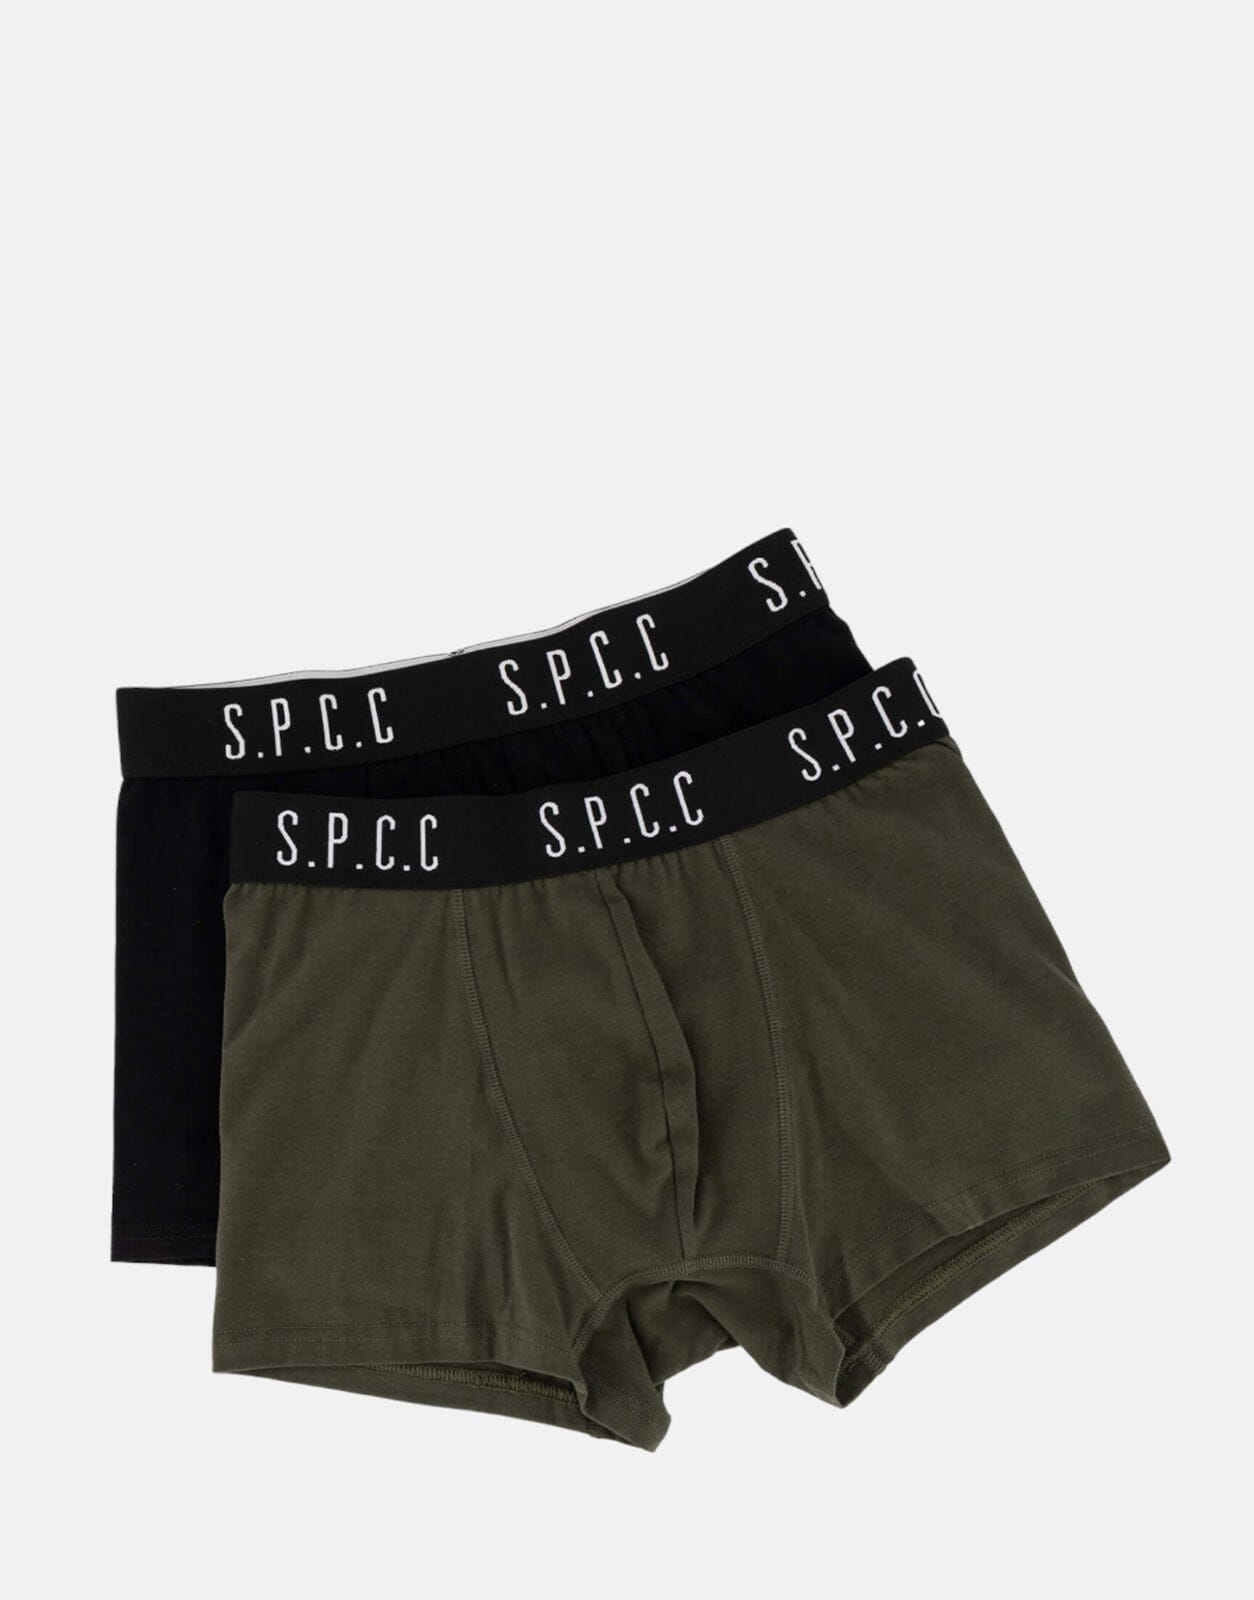 SPCC Emperador 2 Pack Black/Fatigue Boxers - Subwear